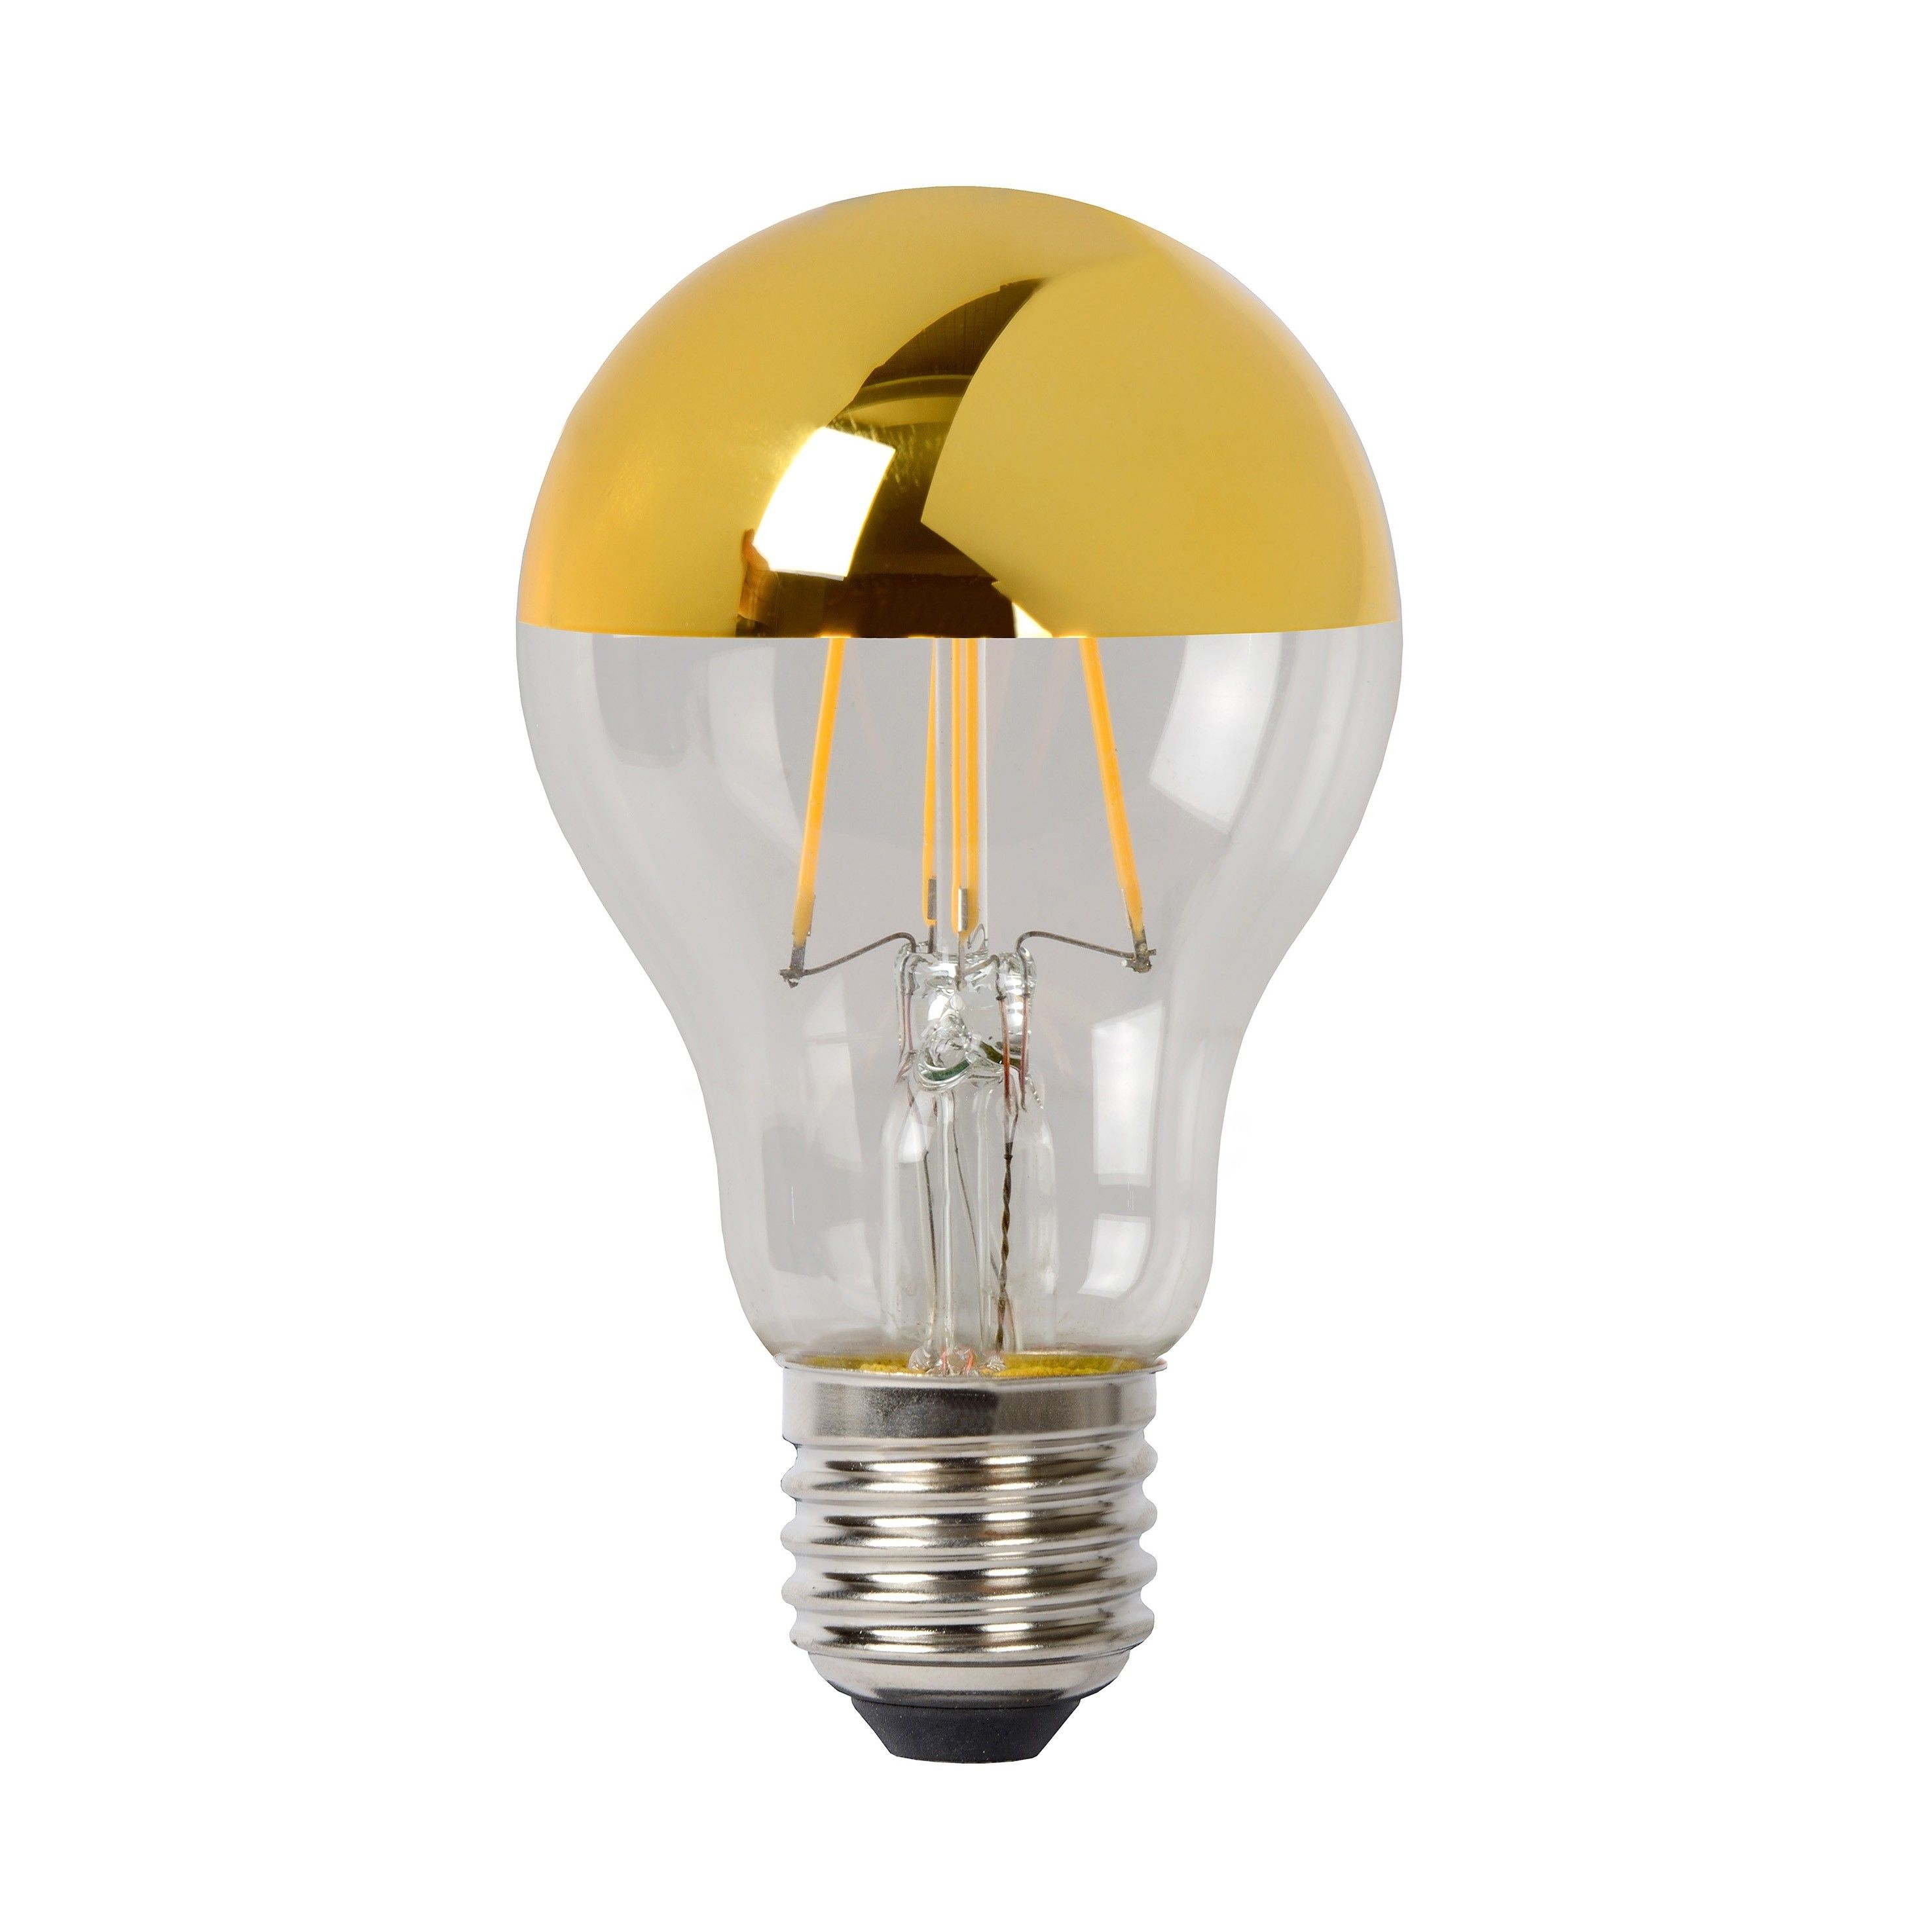 Keel Iedereen kaping Lucide LED bulb - filament lamp dimbaar - Ø 6 x 10 cm - E27 - 5W - 2700K -  goud | Lichtkoning